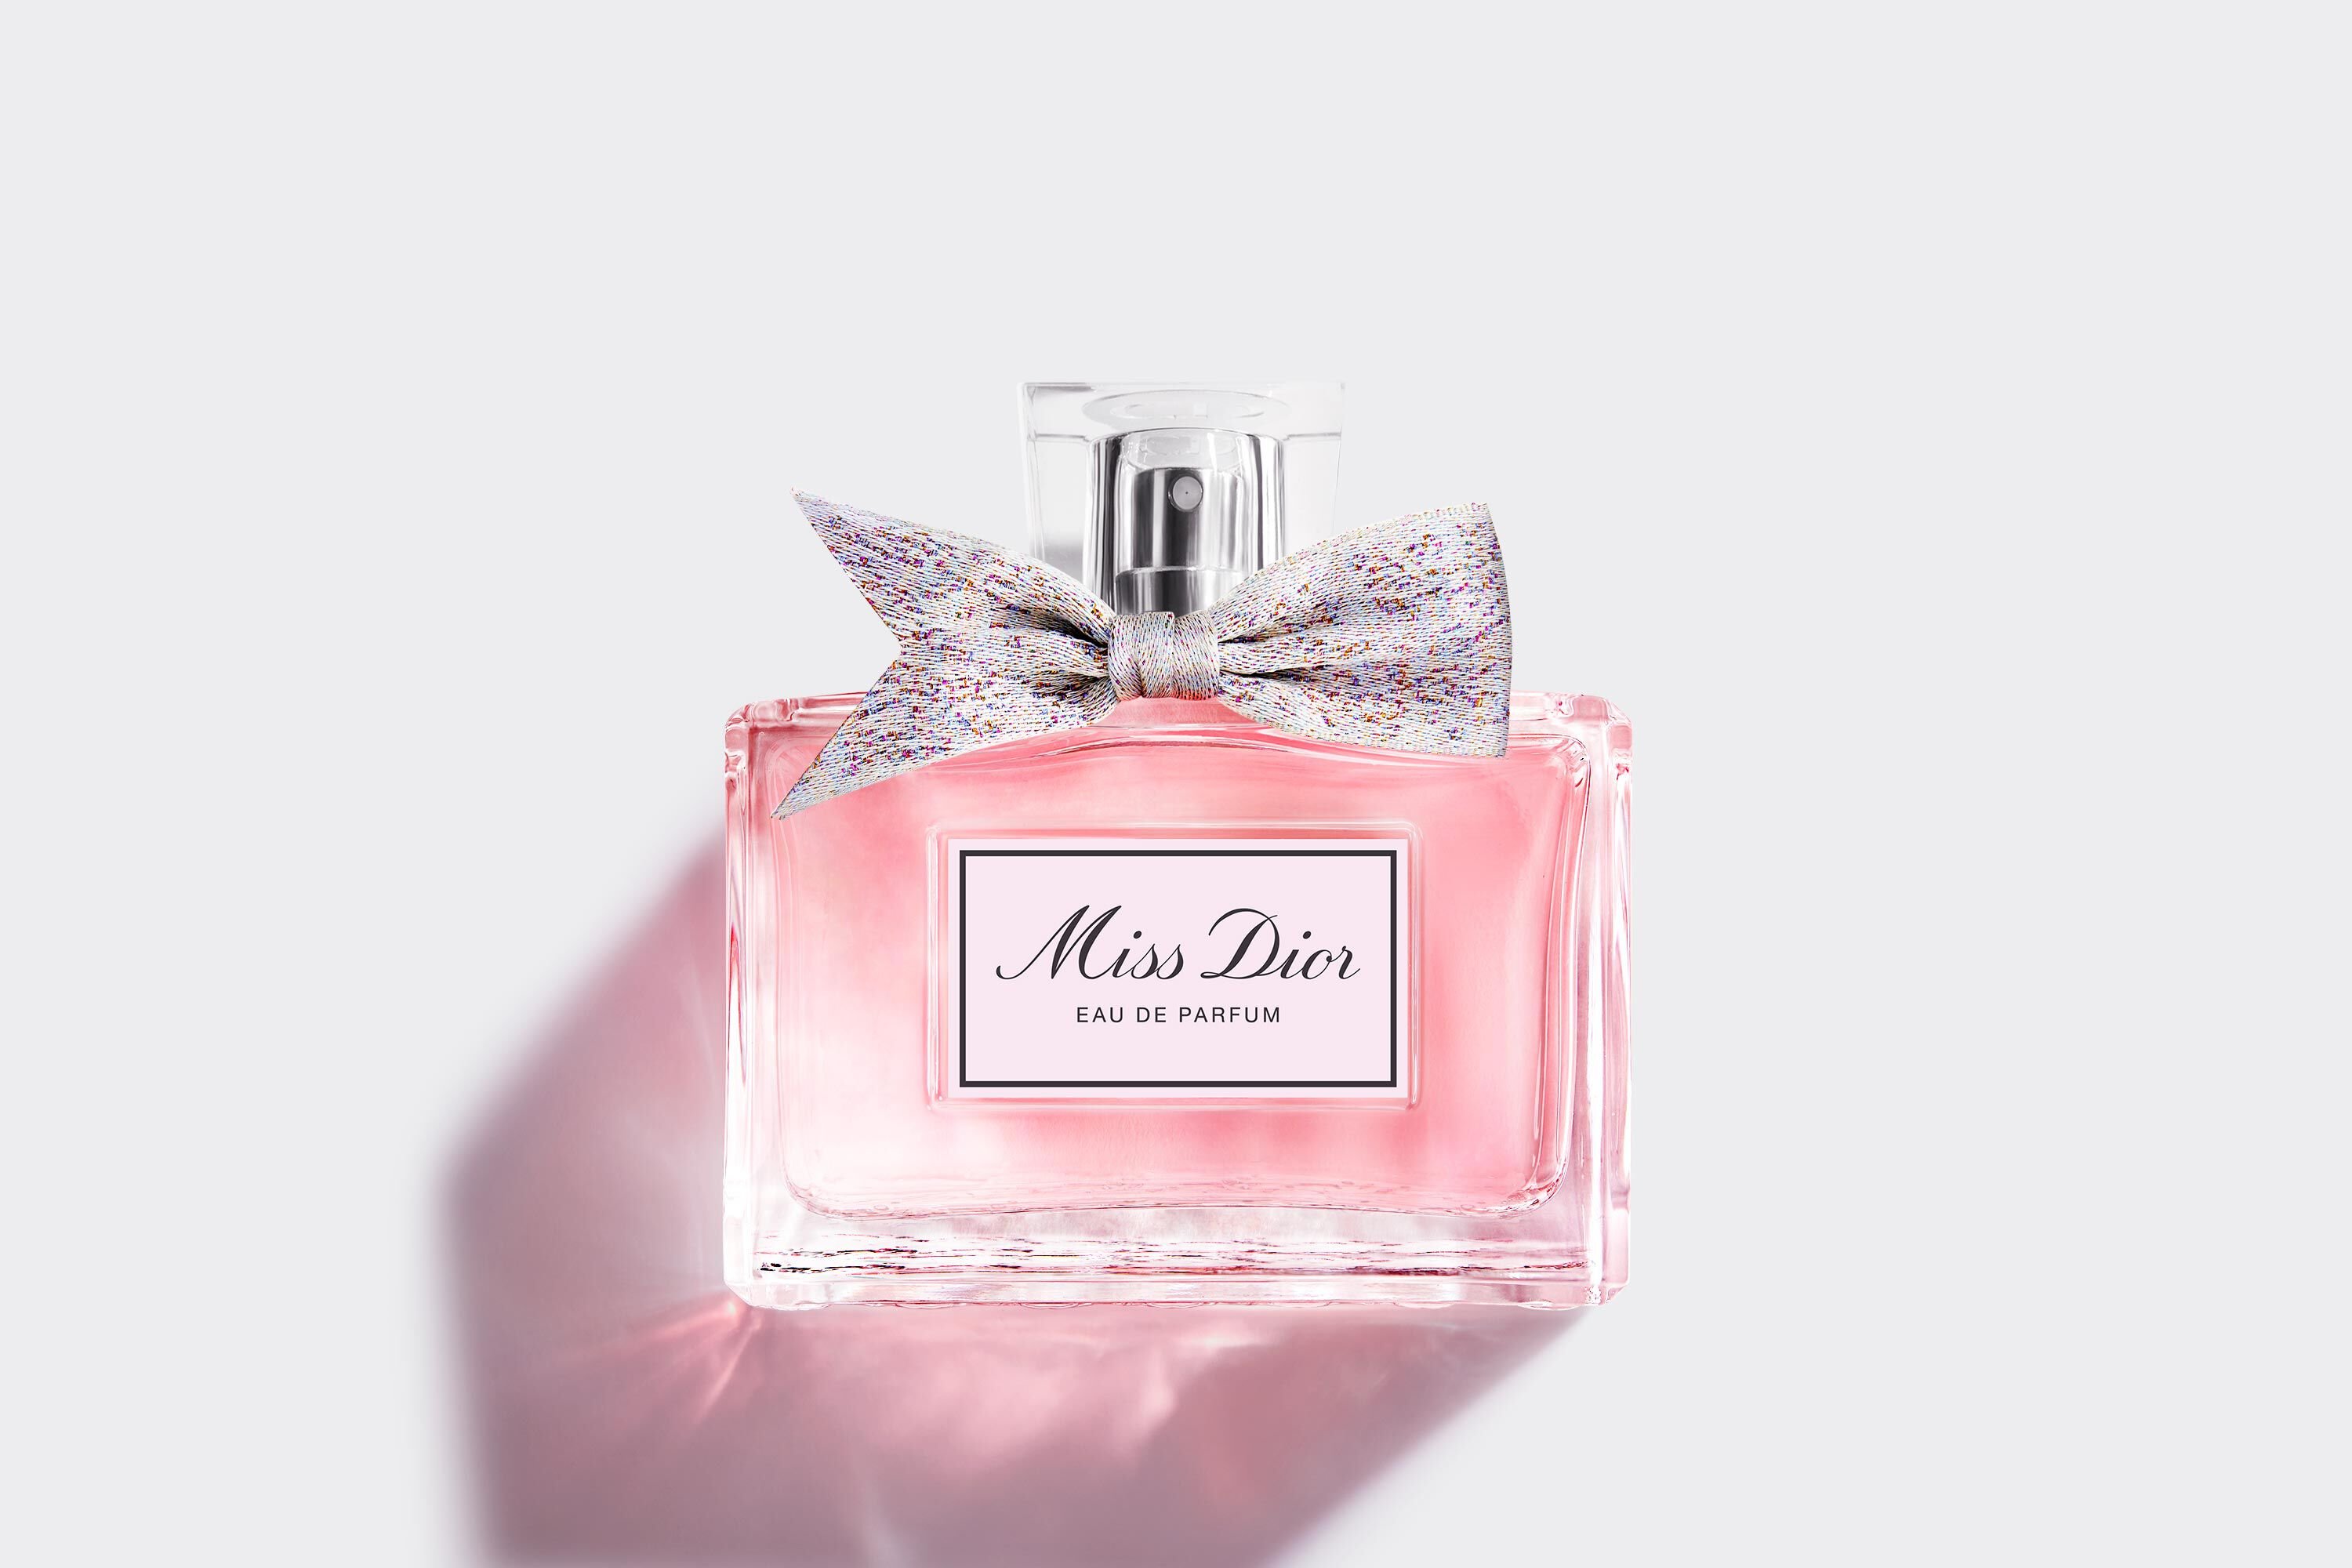 Парфюм аромат Christian Dior MISS DIOR ROSE NROSES для женщин 100  оригинал  купить духи туалетную и парфюмерную воду по выгодной цене в  интернетмагазине парфюмерии ParfumPlusru